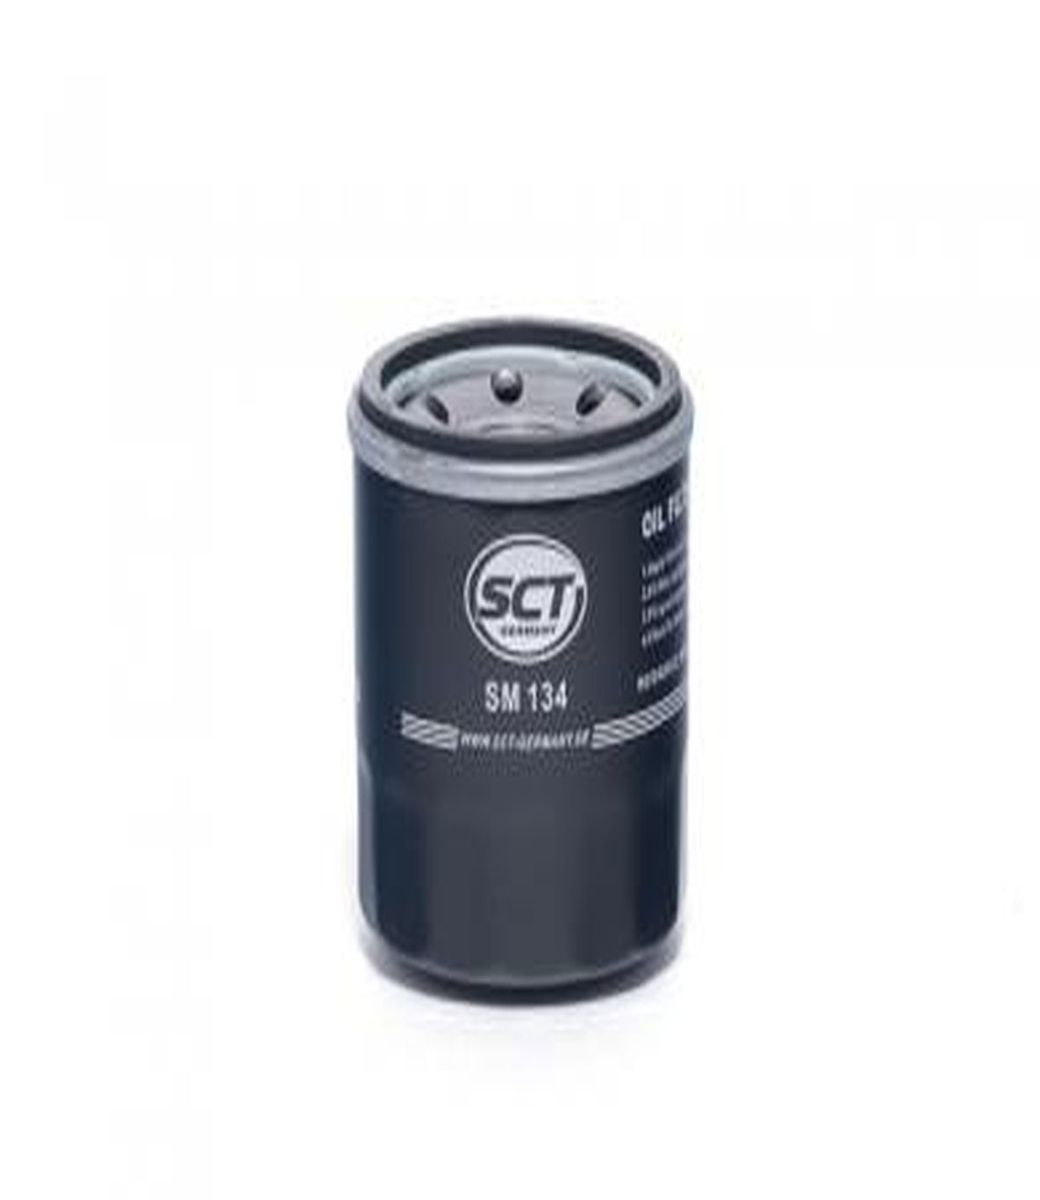  Oil Filter SM 134 